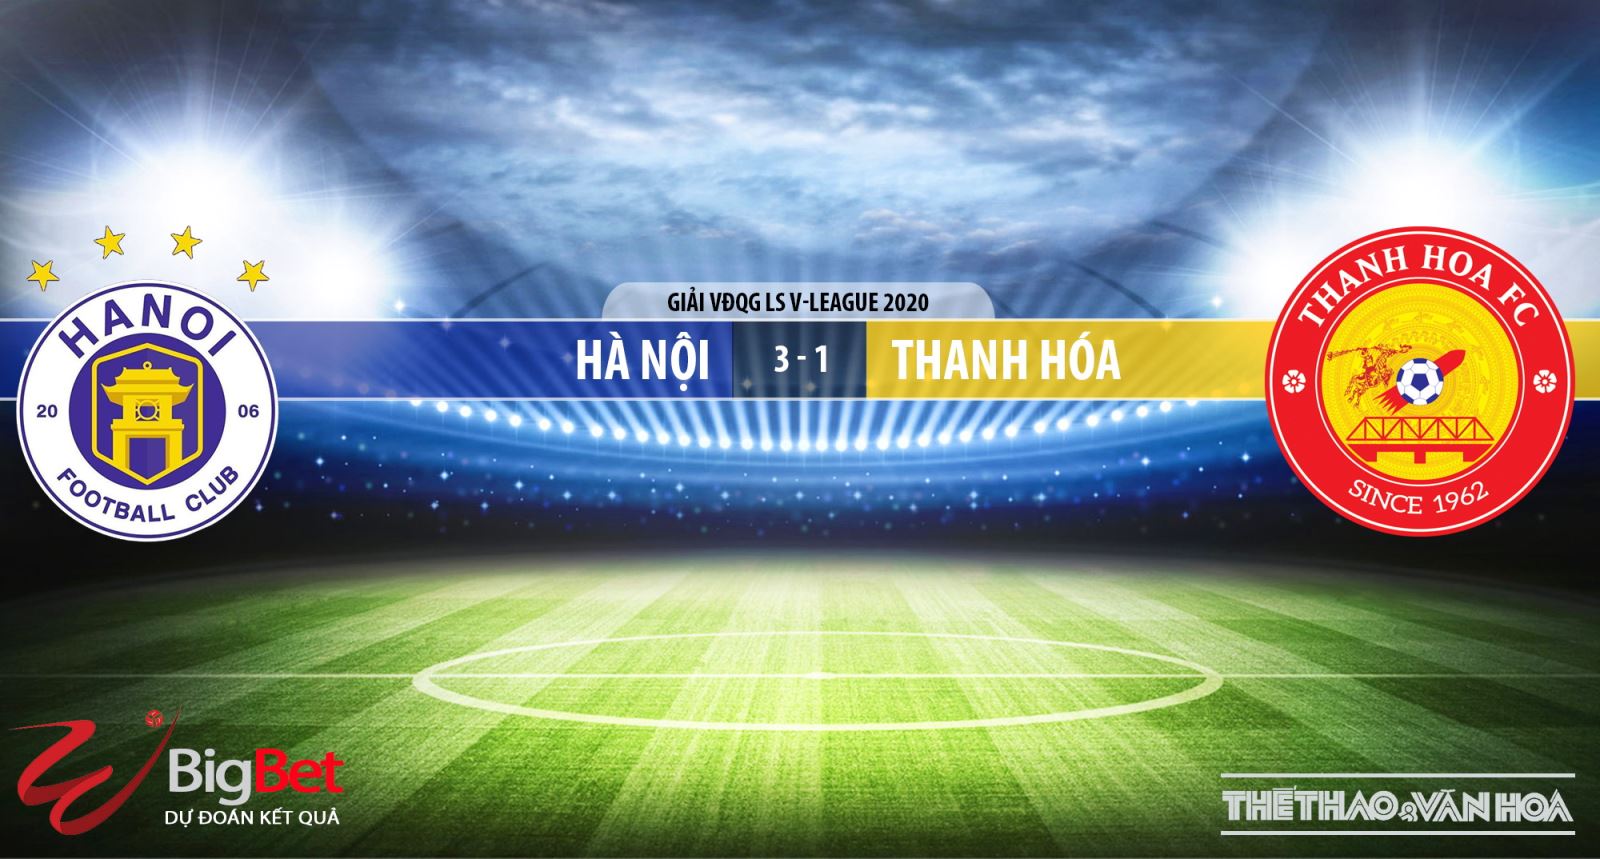 Hà Nội vs Thanh Hóa, Hà Nội, Thanh Hoá, nhận định bóng đá Hà Nội vs Thanh Hóa, kèo bóng đá, kèo thơm, nhận định Hà Nội vs Thanh Hóa